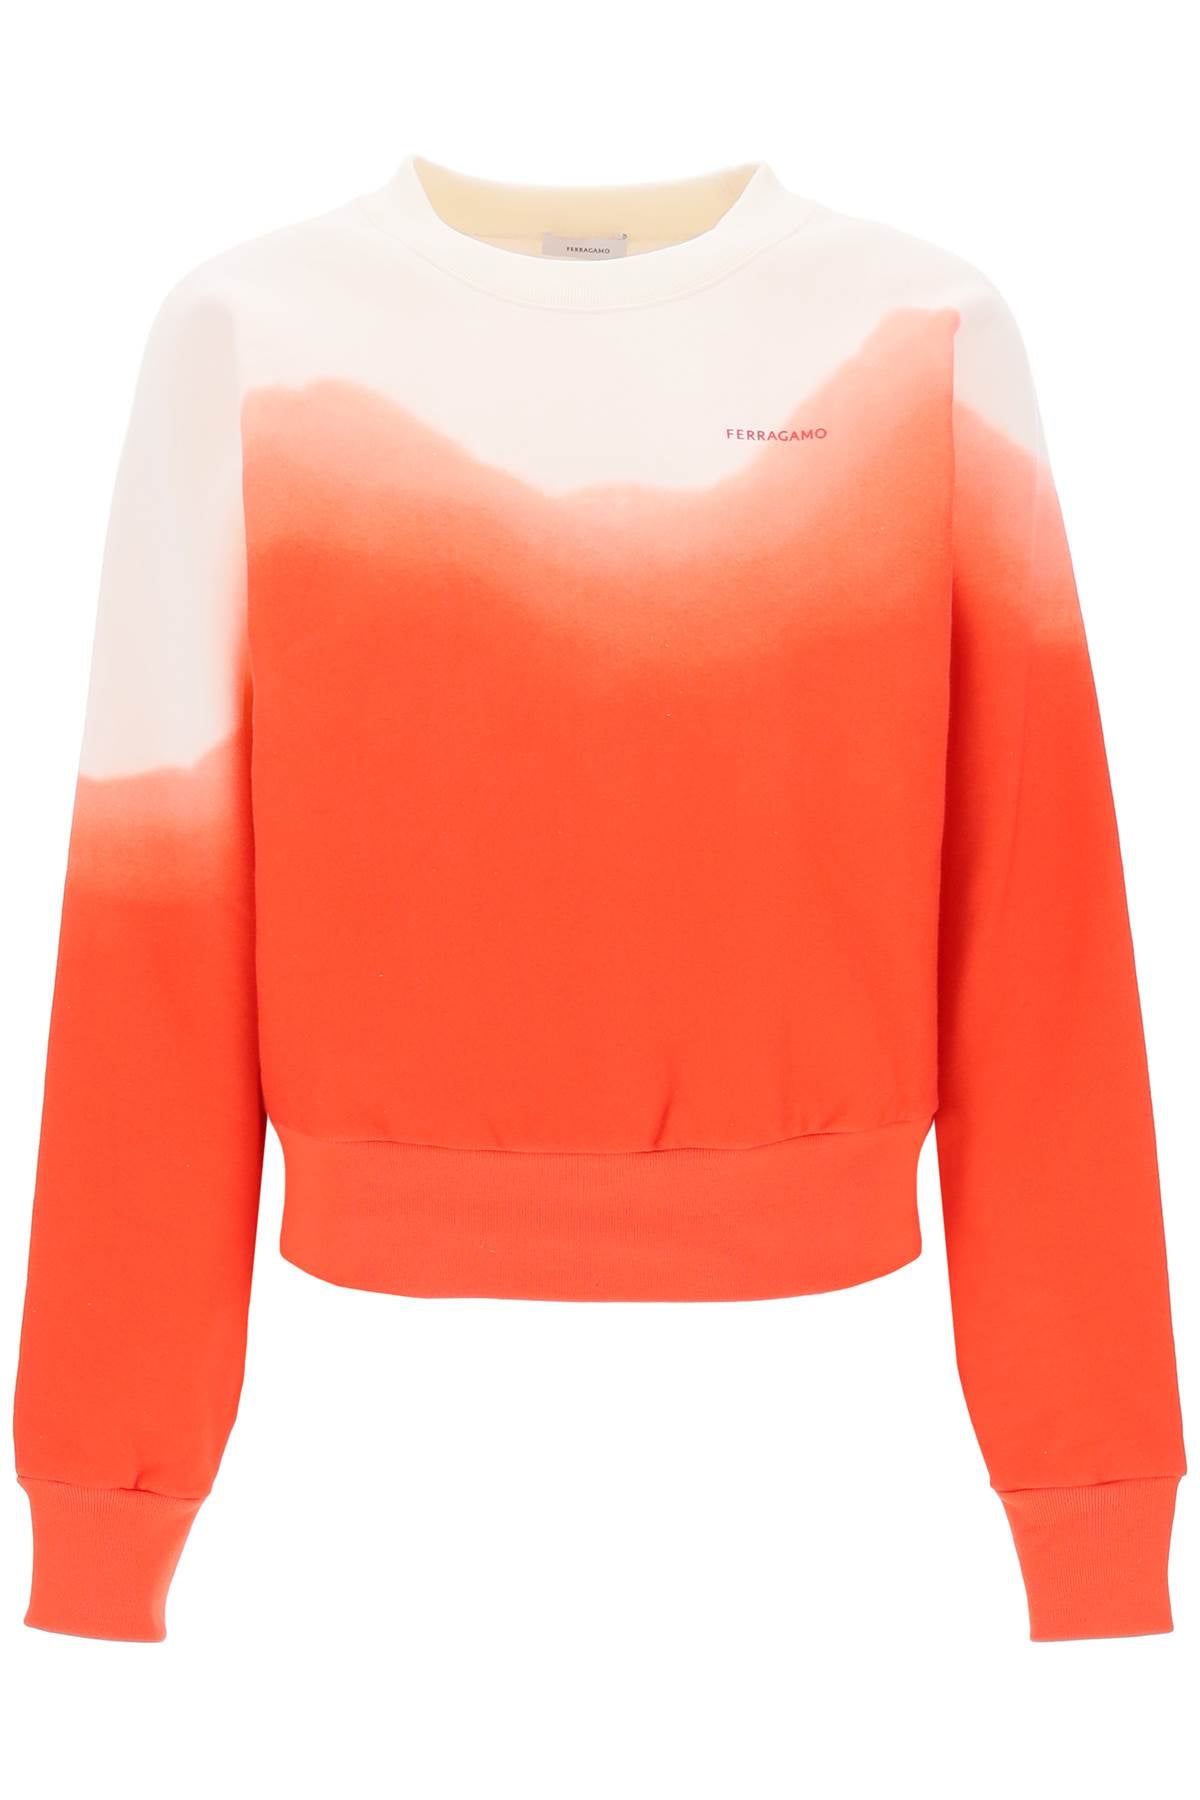 Ferragamo Dip-dye Effect Sweatshirt Women In Multicolor